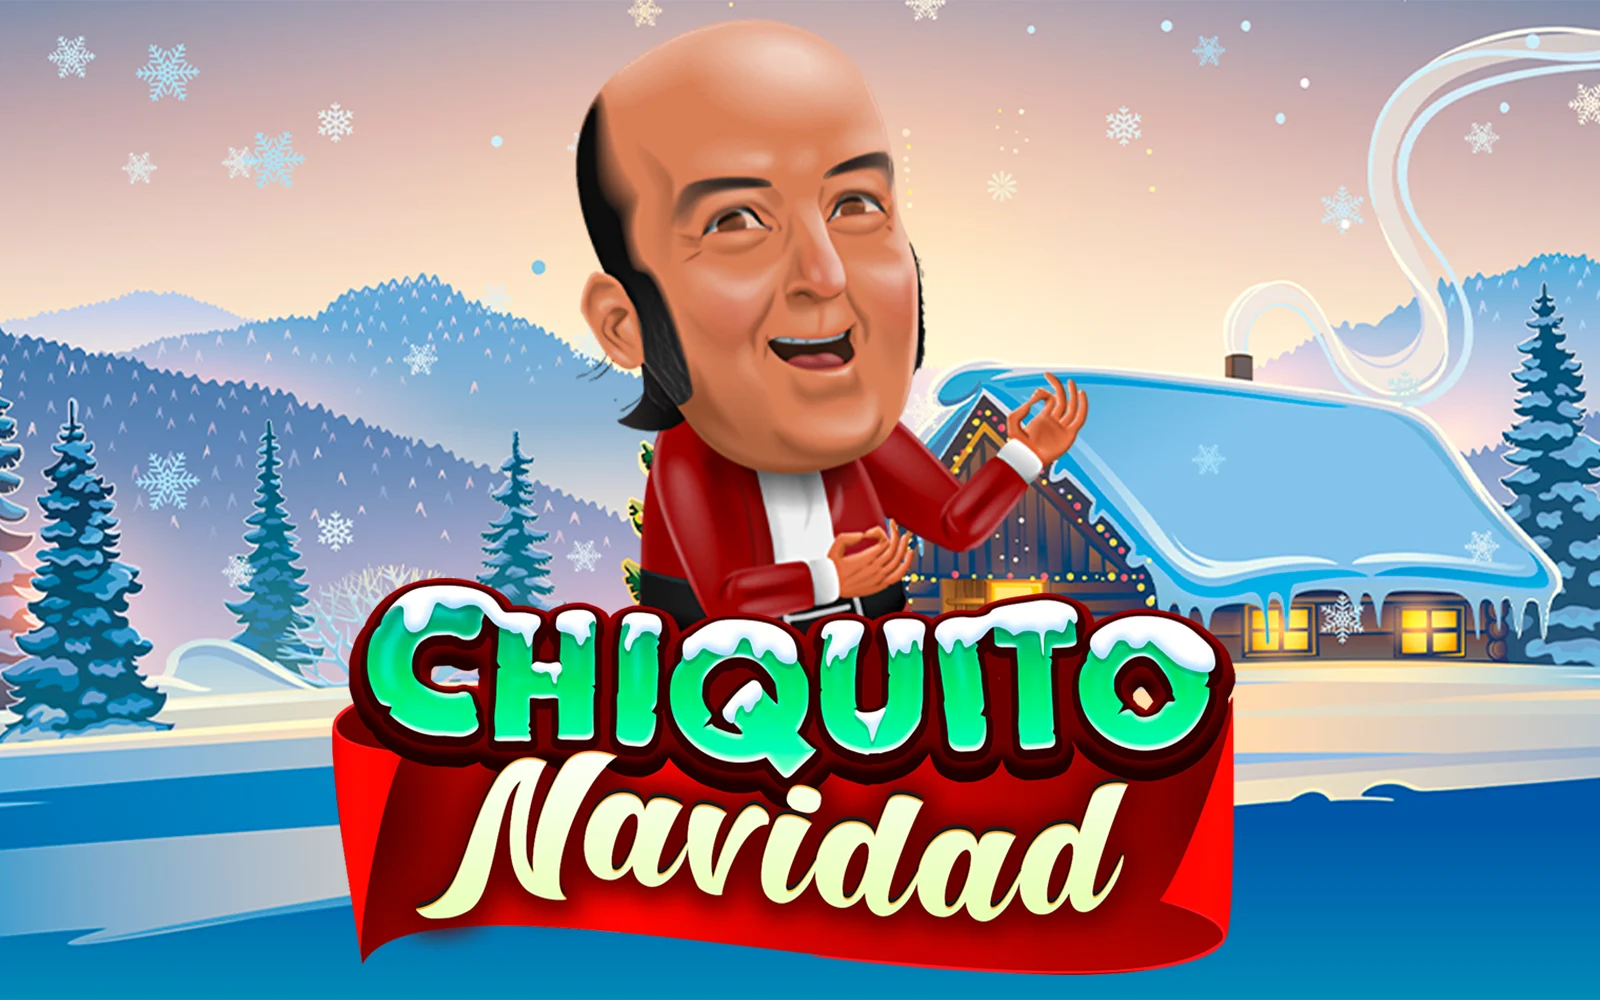 Play Chiquito Navidad on Starcasino.be online casino